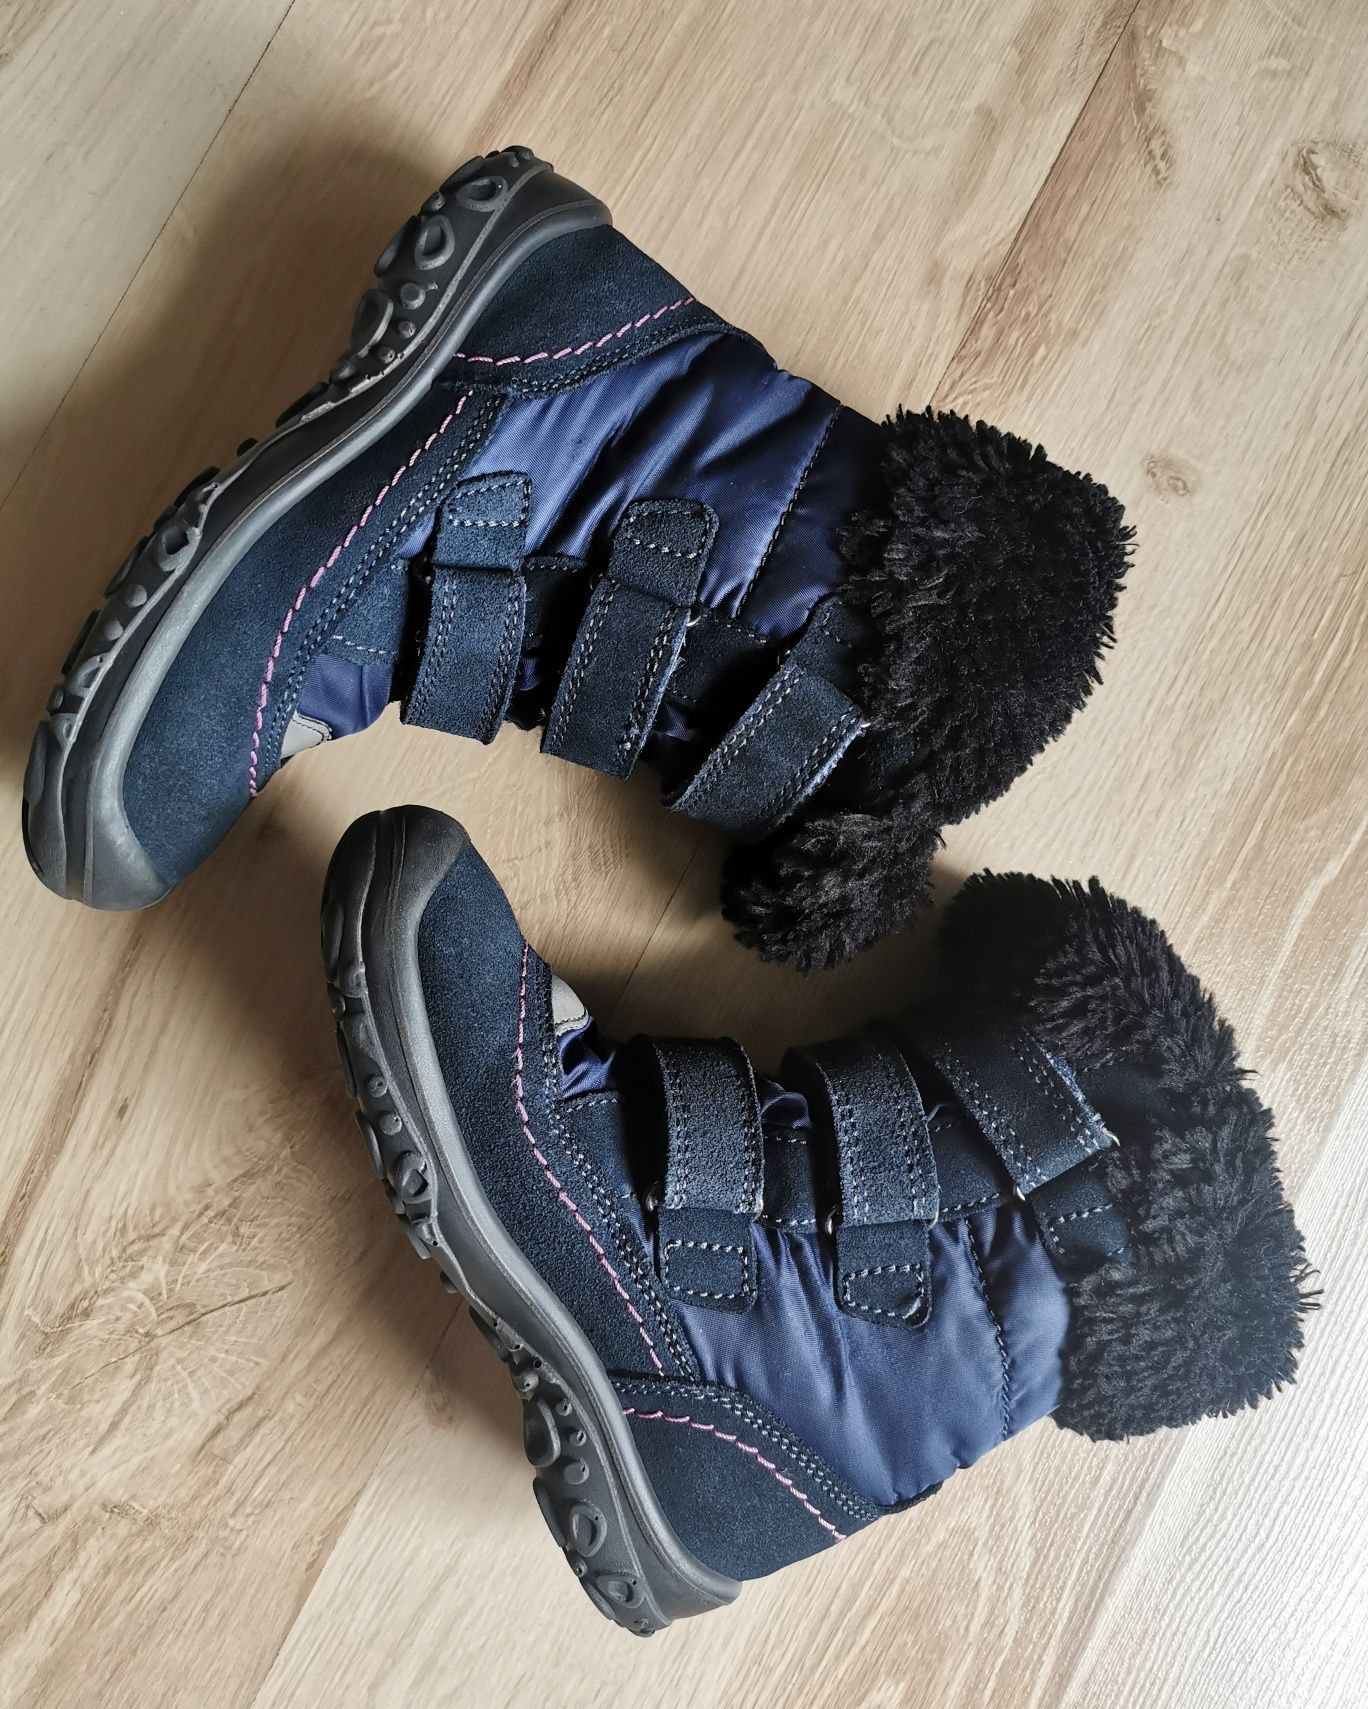 Buty zimowe śniegowce Elefanten 28, wkładka 18,5 cm